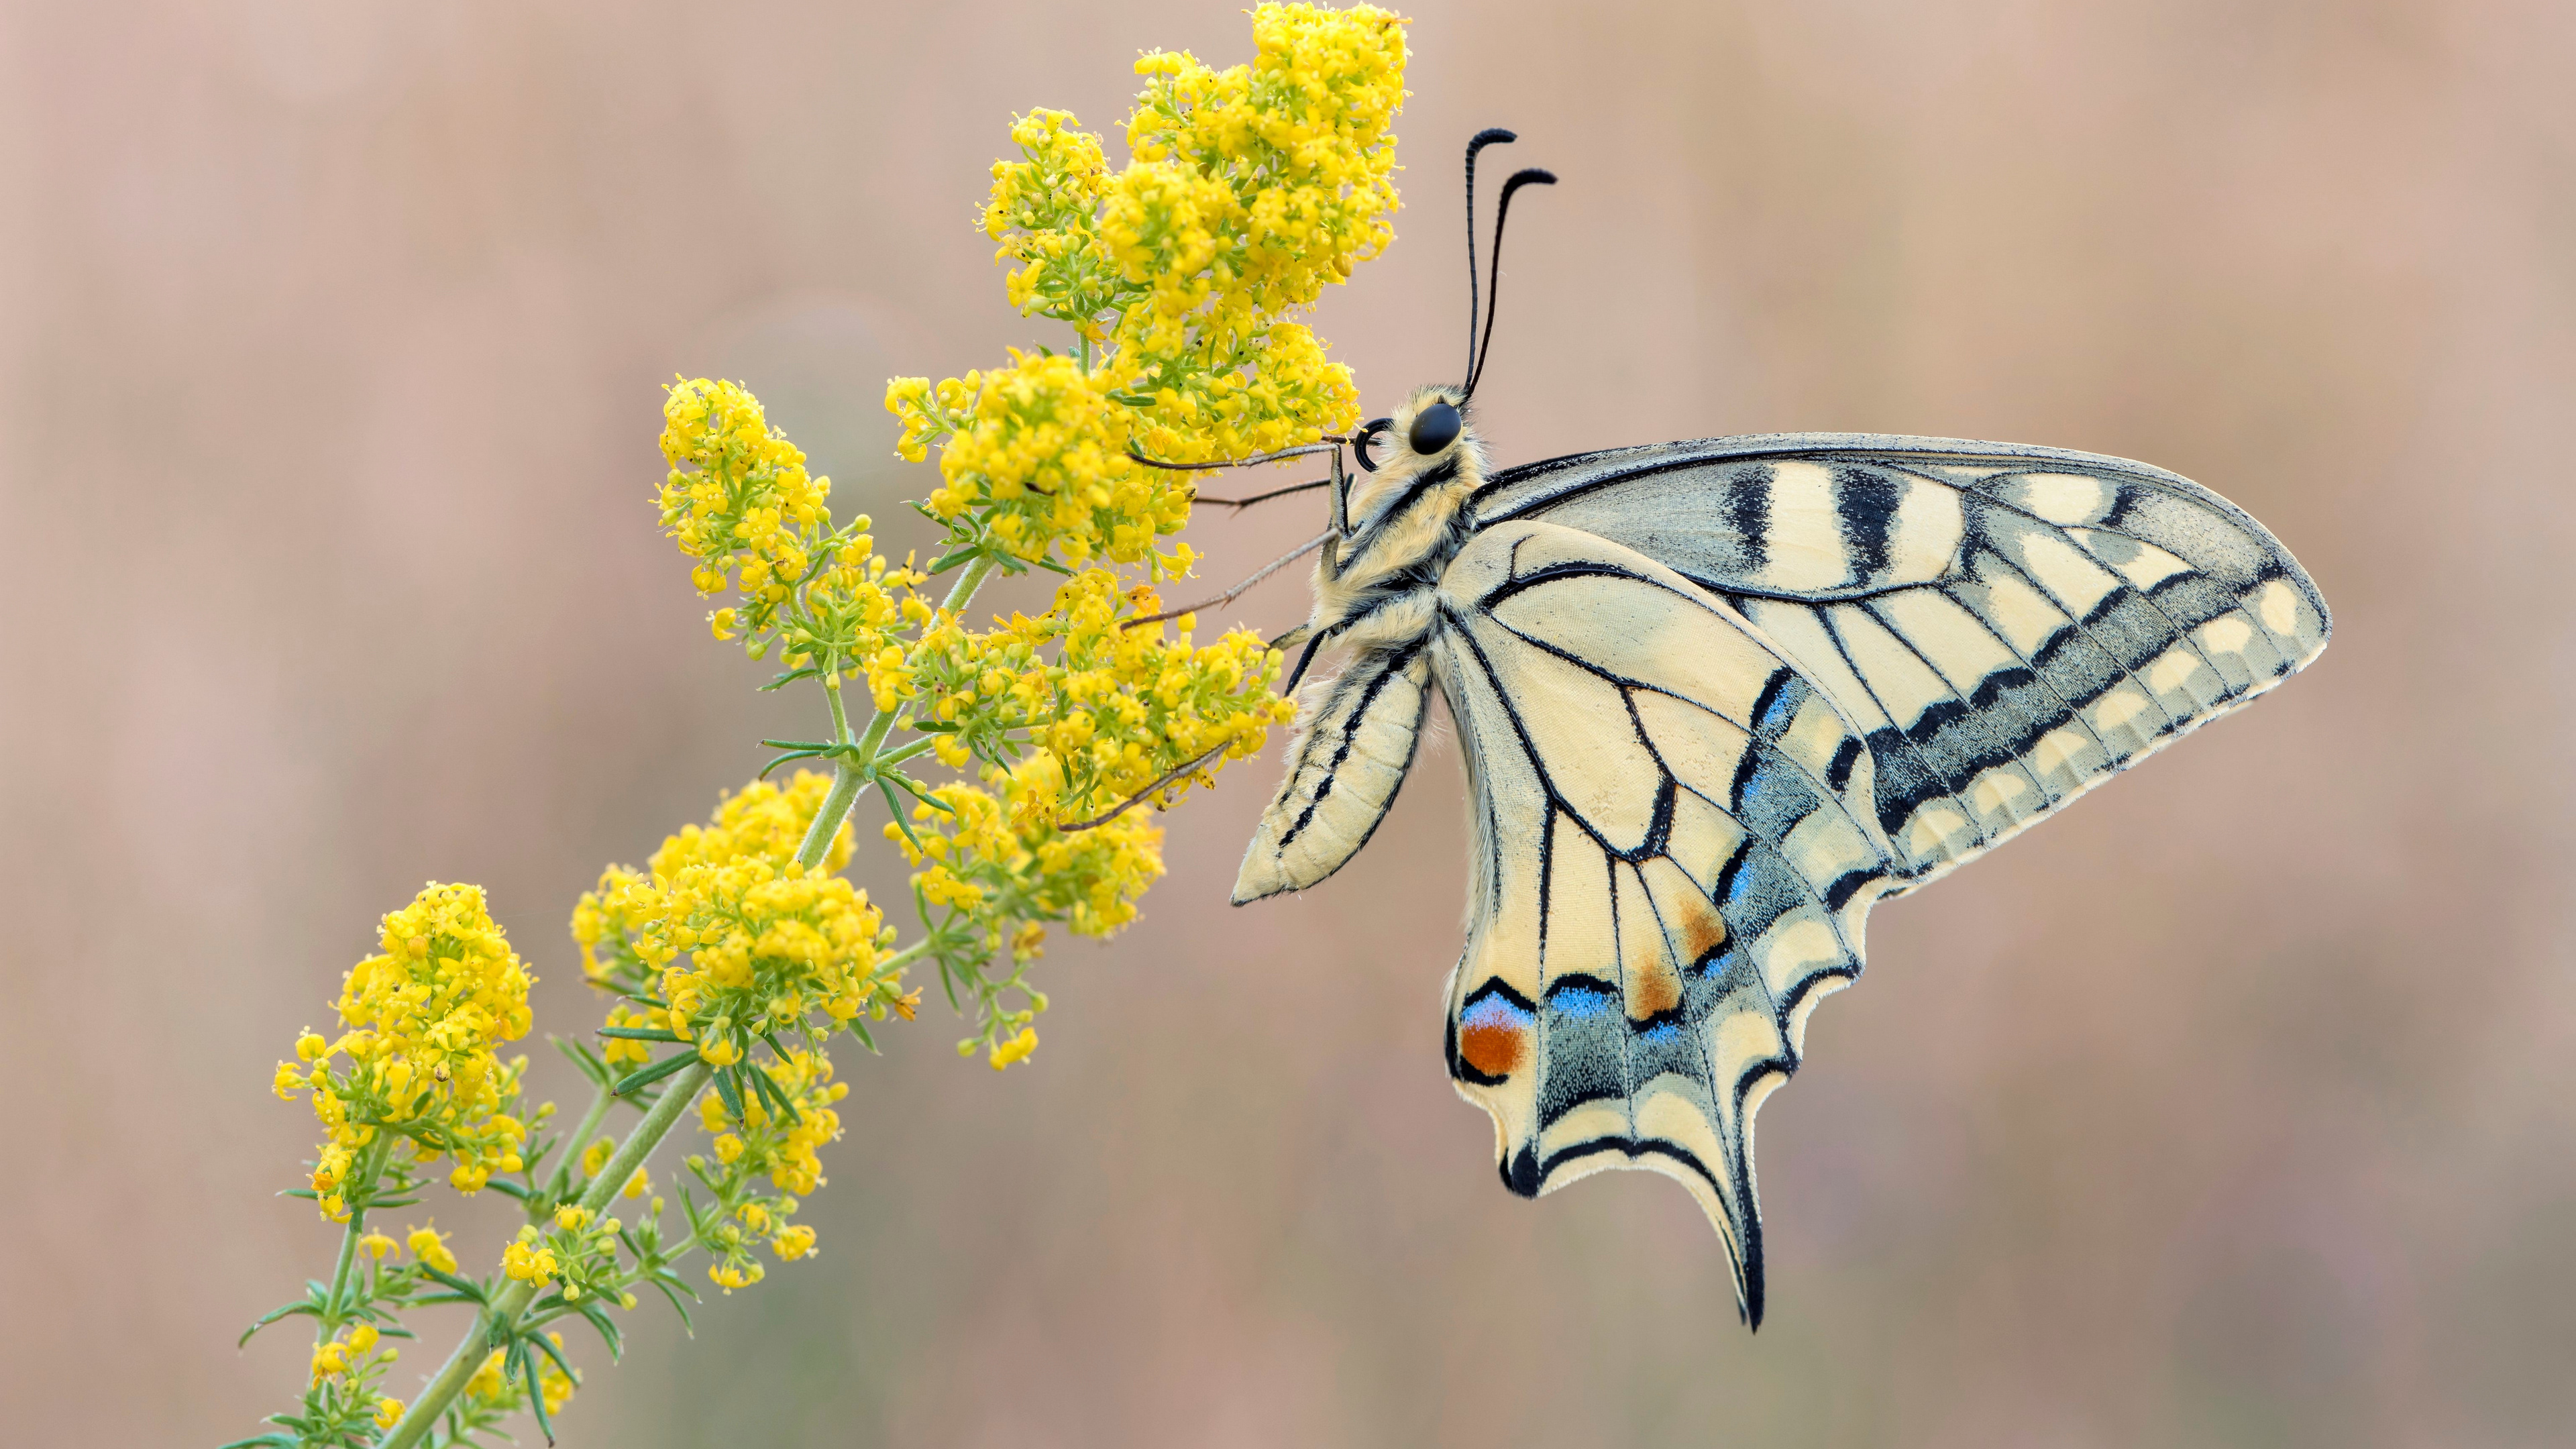 一只燕尾蝶坐在一朵黄色的花朵上。